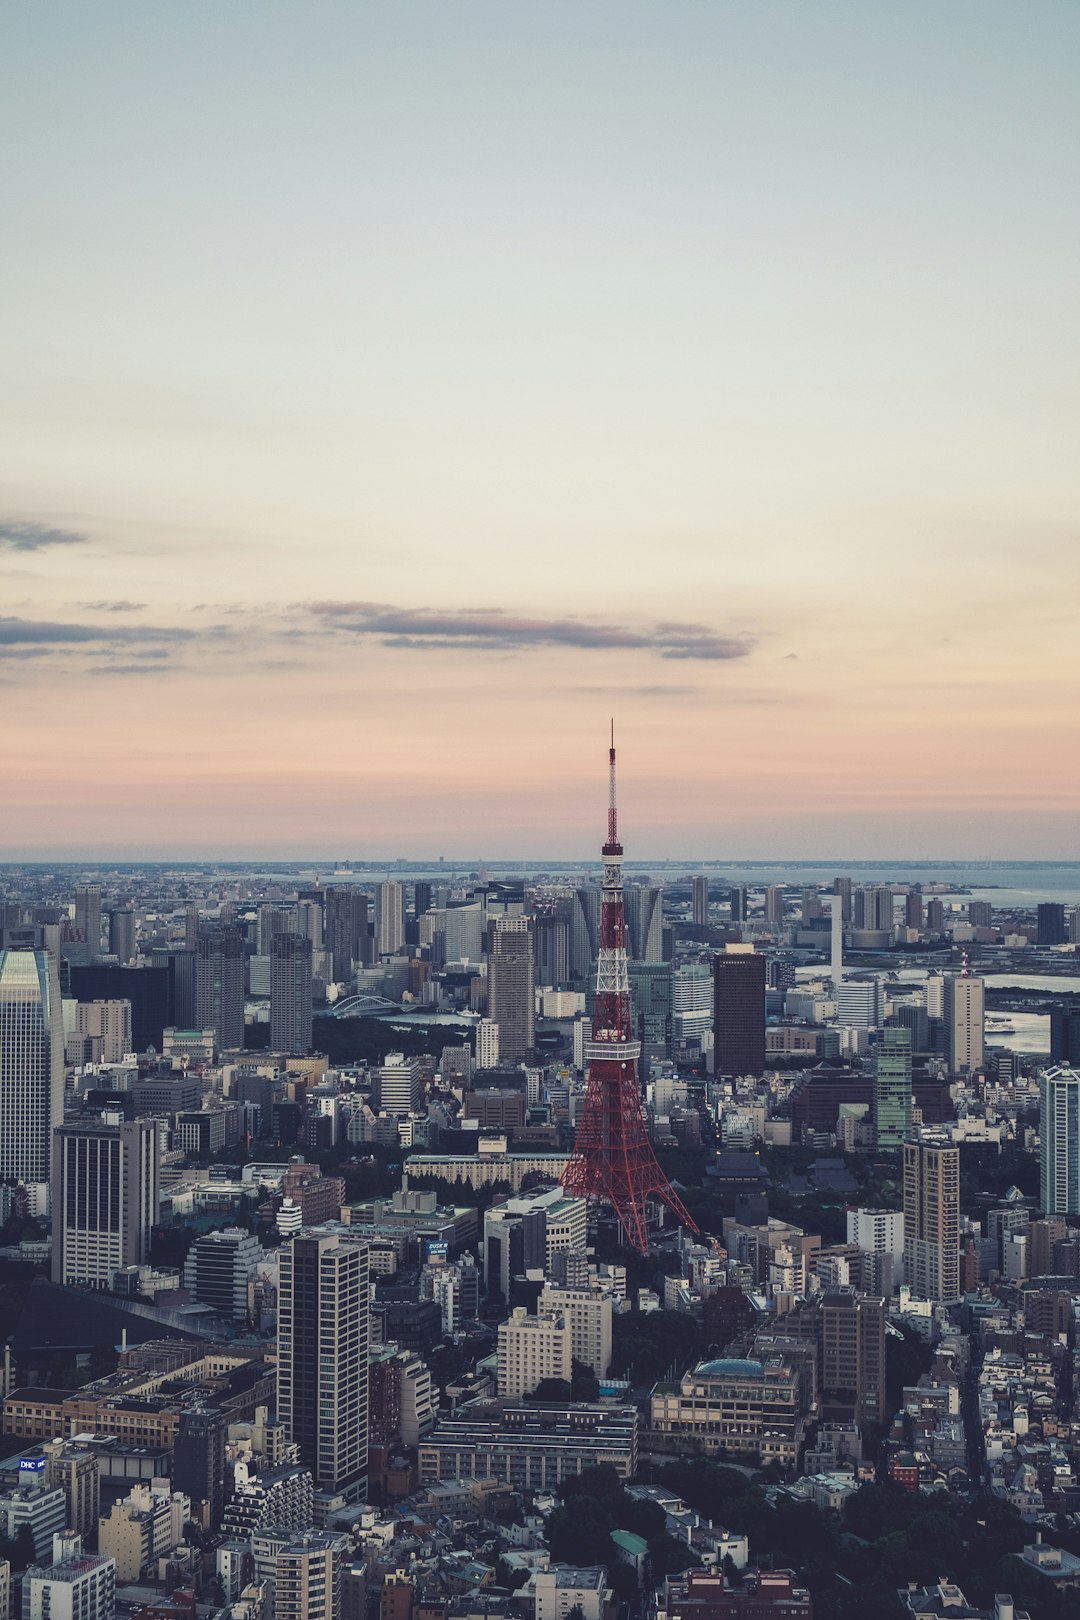 Travel Tips and Stories of Präfektur Tokio in Japan